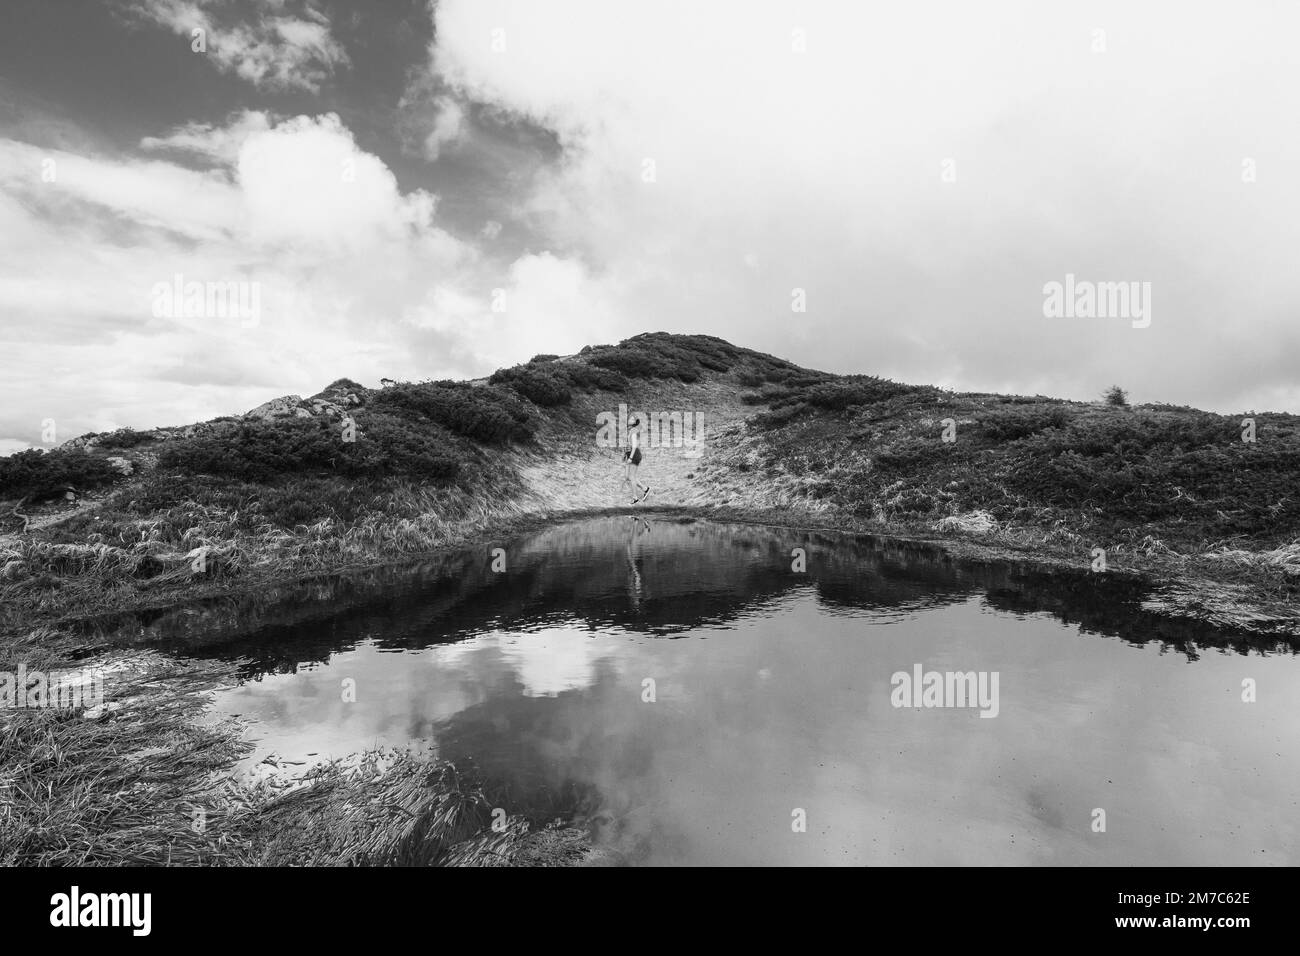 Randonneur sur une rive vallonnée d'une rivière photo monochrome paysage Banque D'Images